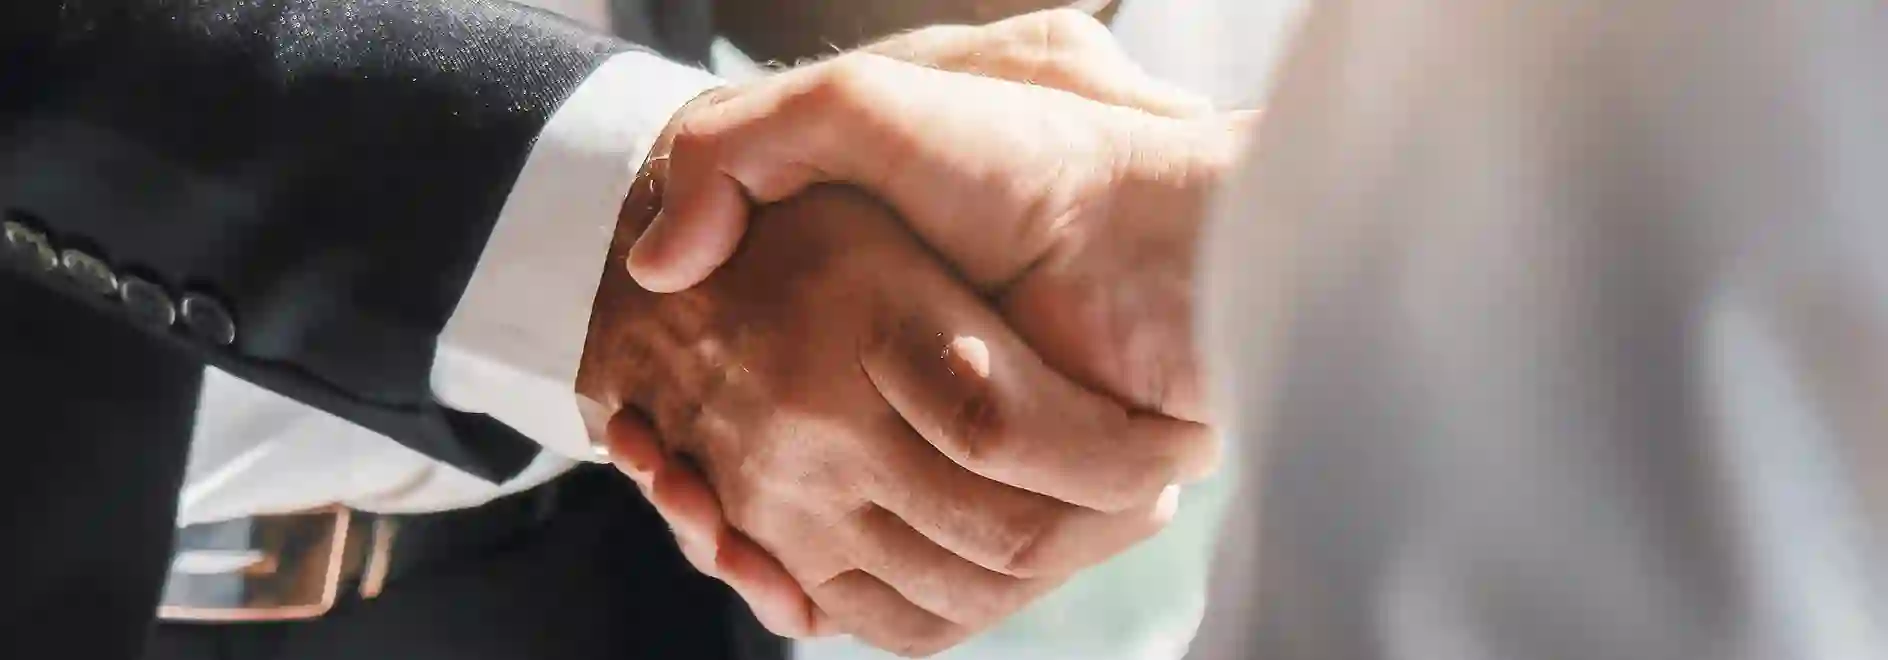 Handschlag zwischen zwei Personen